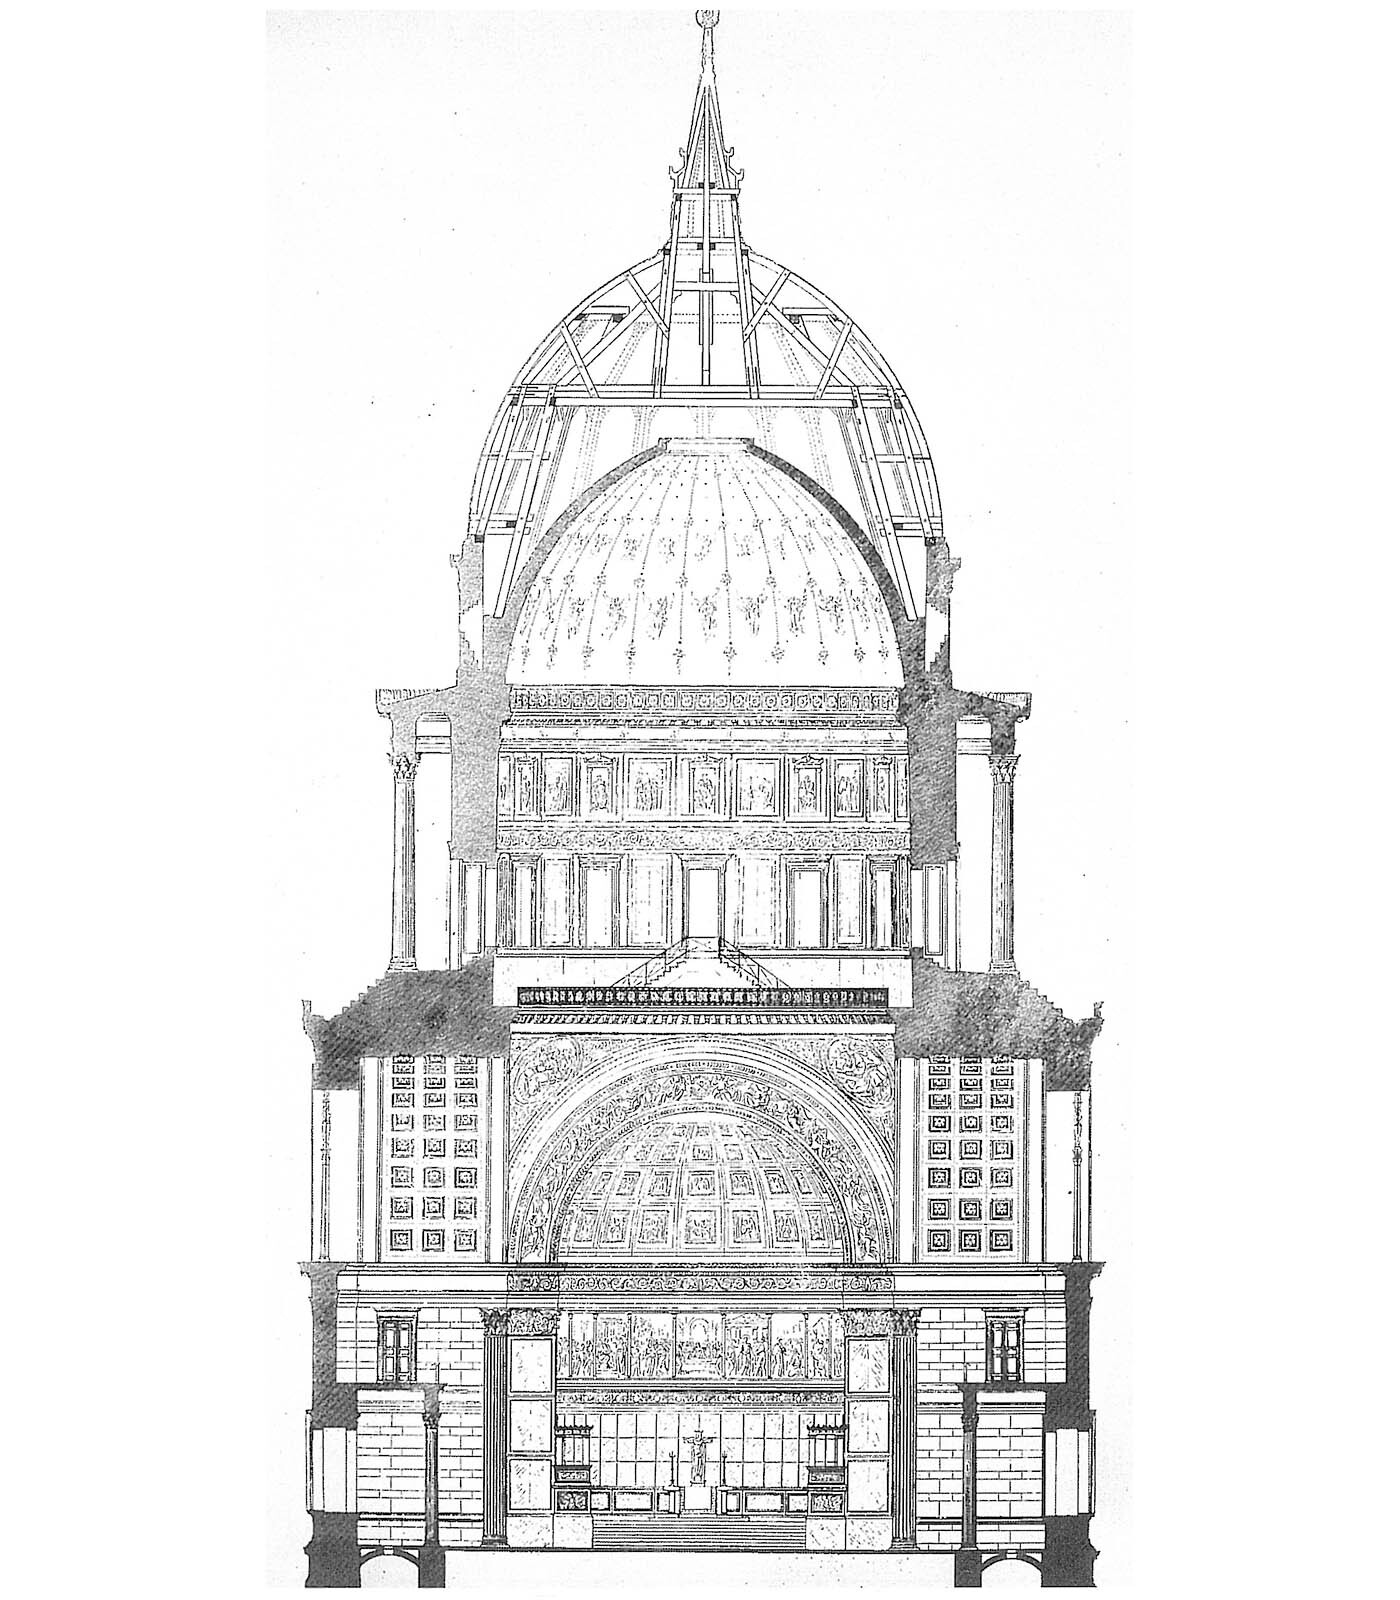 Zeichnung: Detaillierter Schnitt durch die Nikolaikirche mit Kuppel.